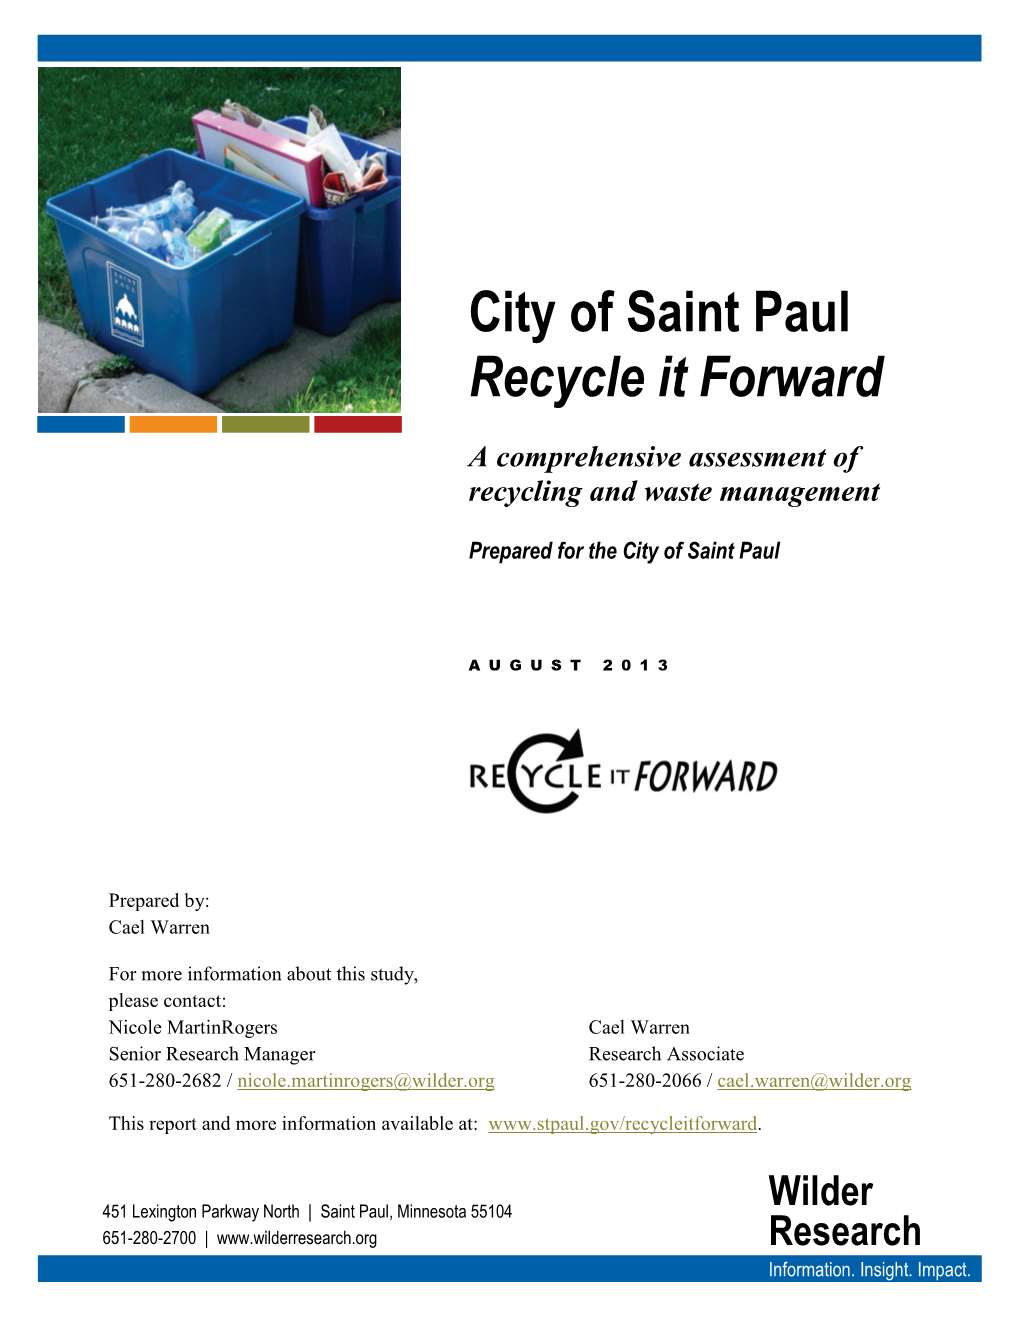 City of Saint Paul Recycle It Forward